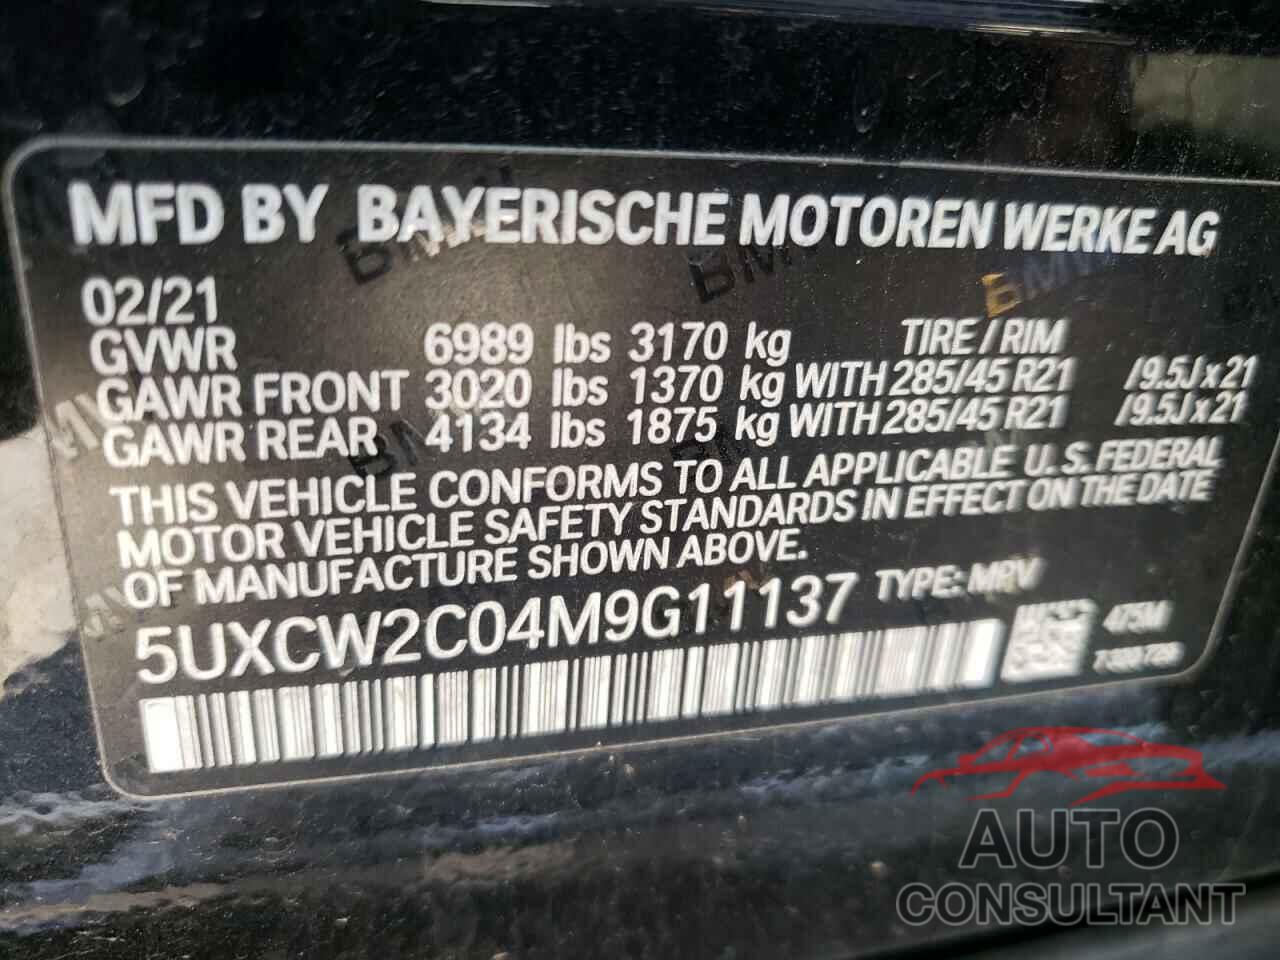 BMW X7 2021 - 5UXCW2C04M9G11137